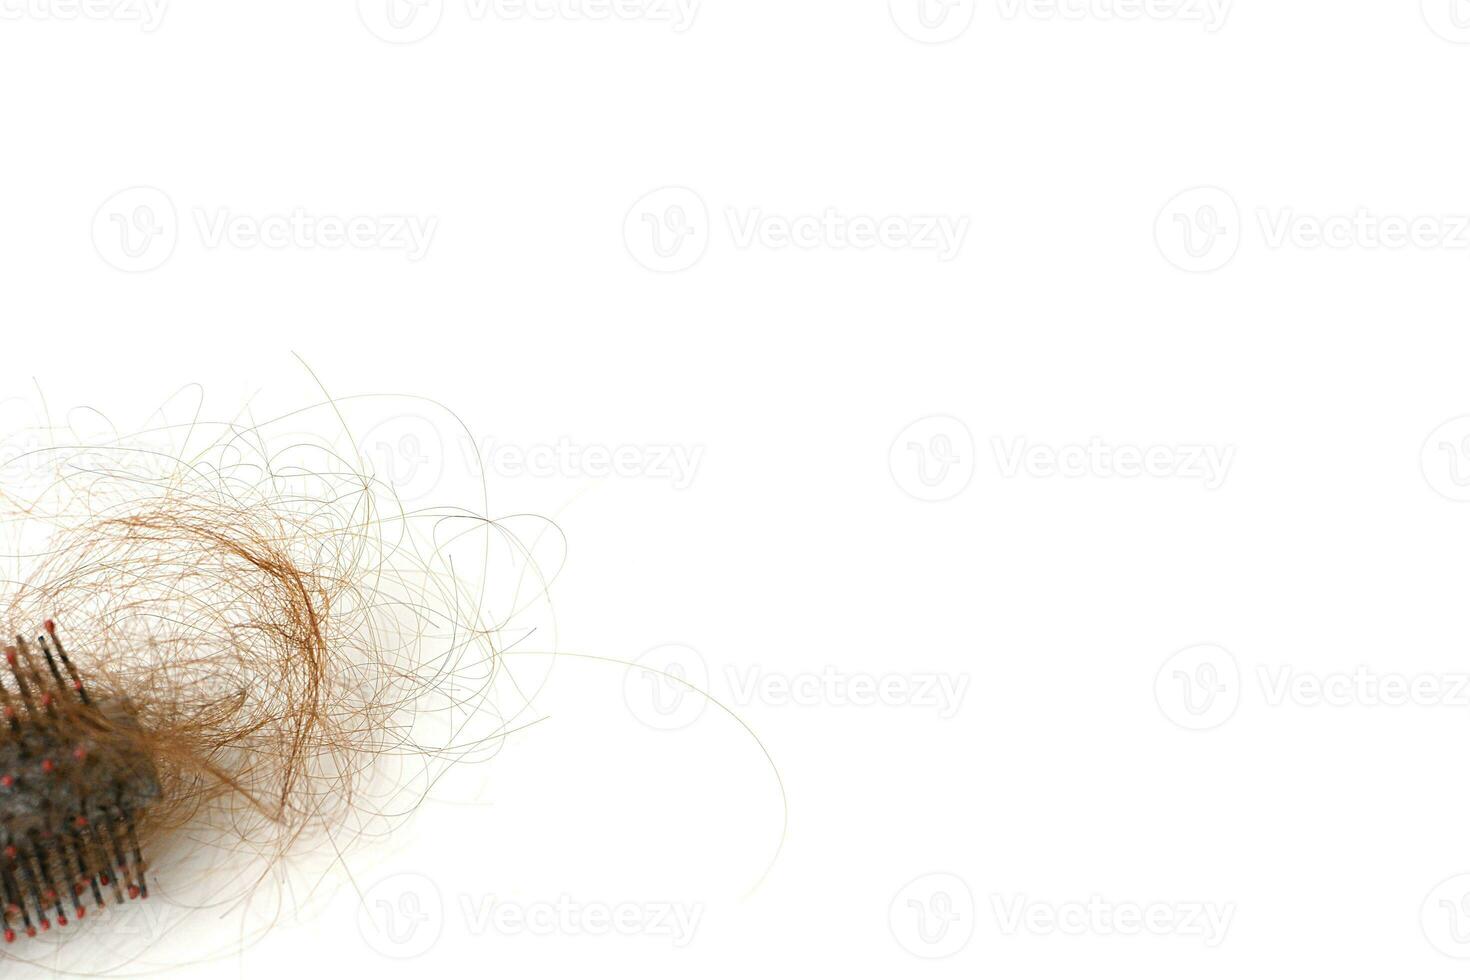 cheveux perte dans peigne, cheveux tomber tous les jours sérieux problème, sur blanc Contexte. photo